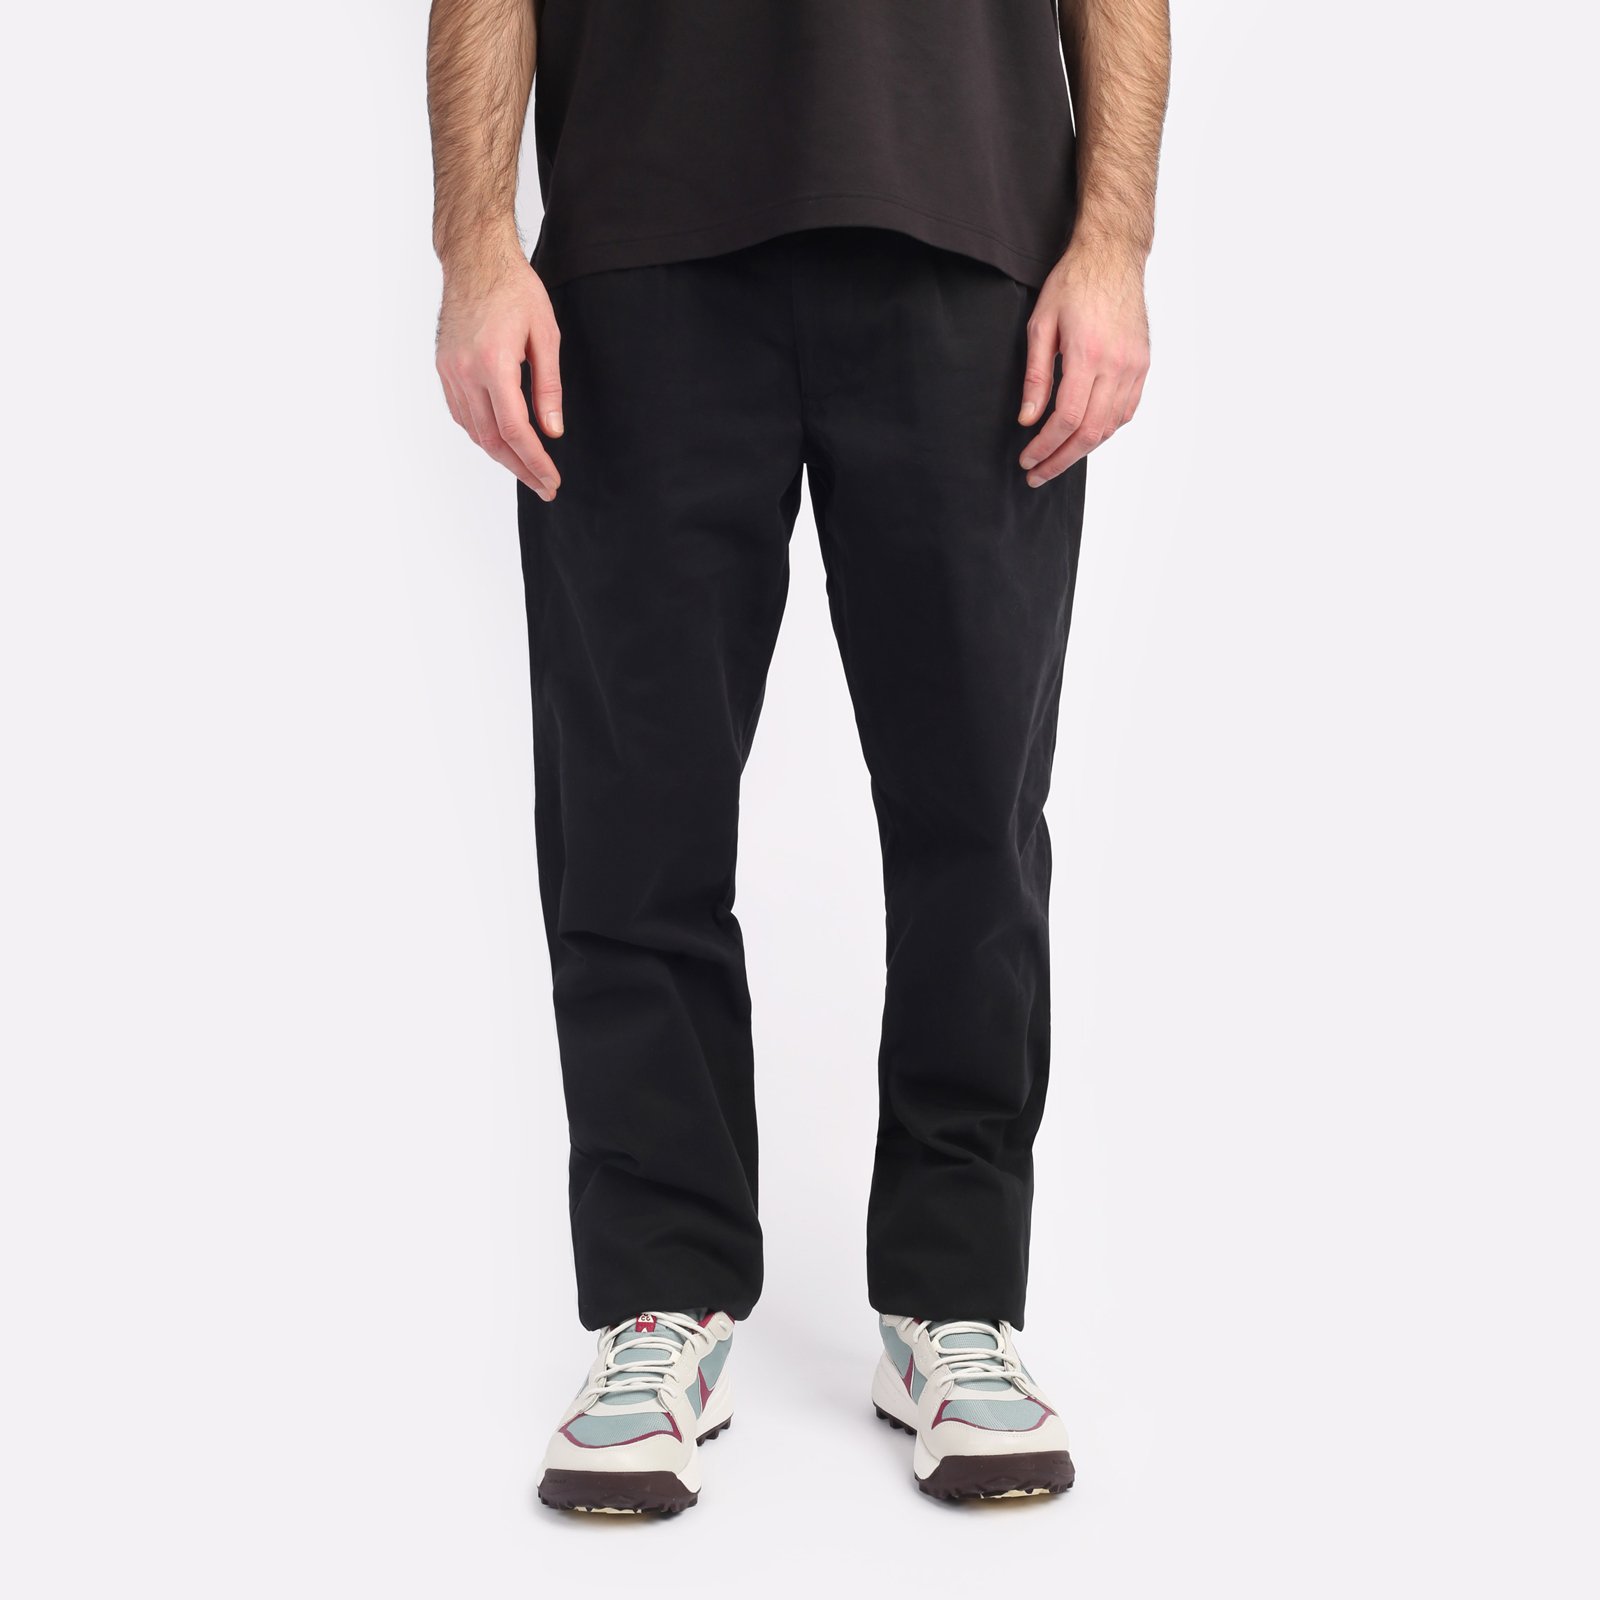 мужские брюки Alpha Industries Classic Trousers  (MBC53500CO-black)  - цена, описание, фото 1